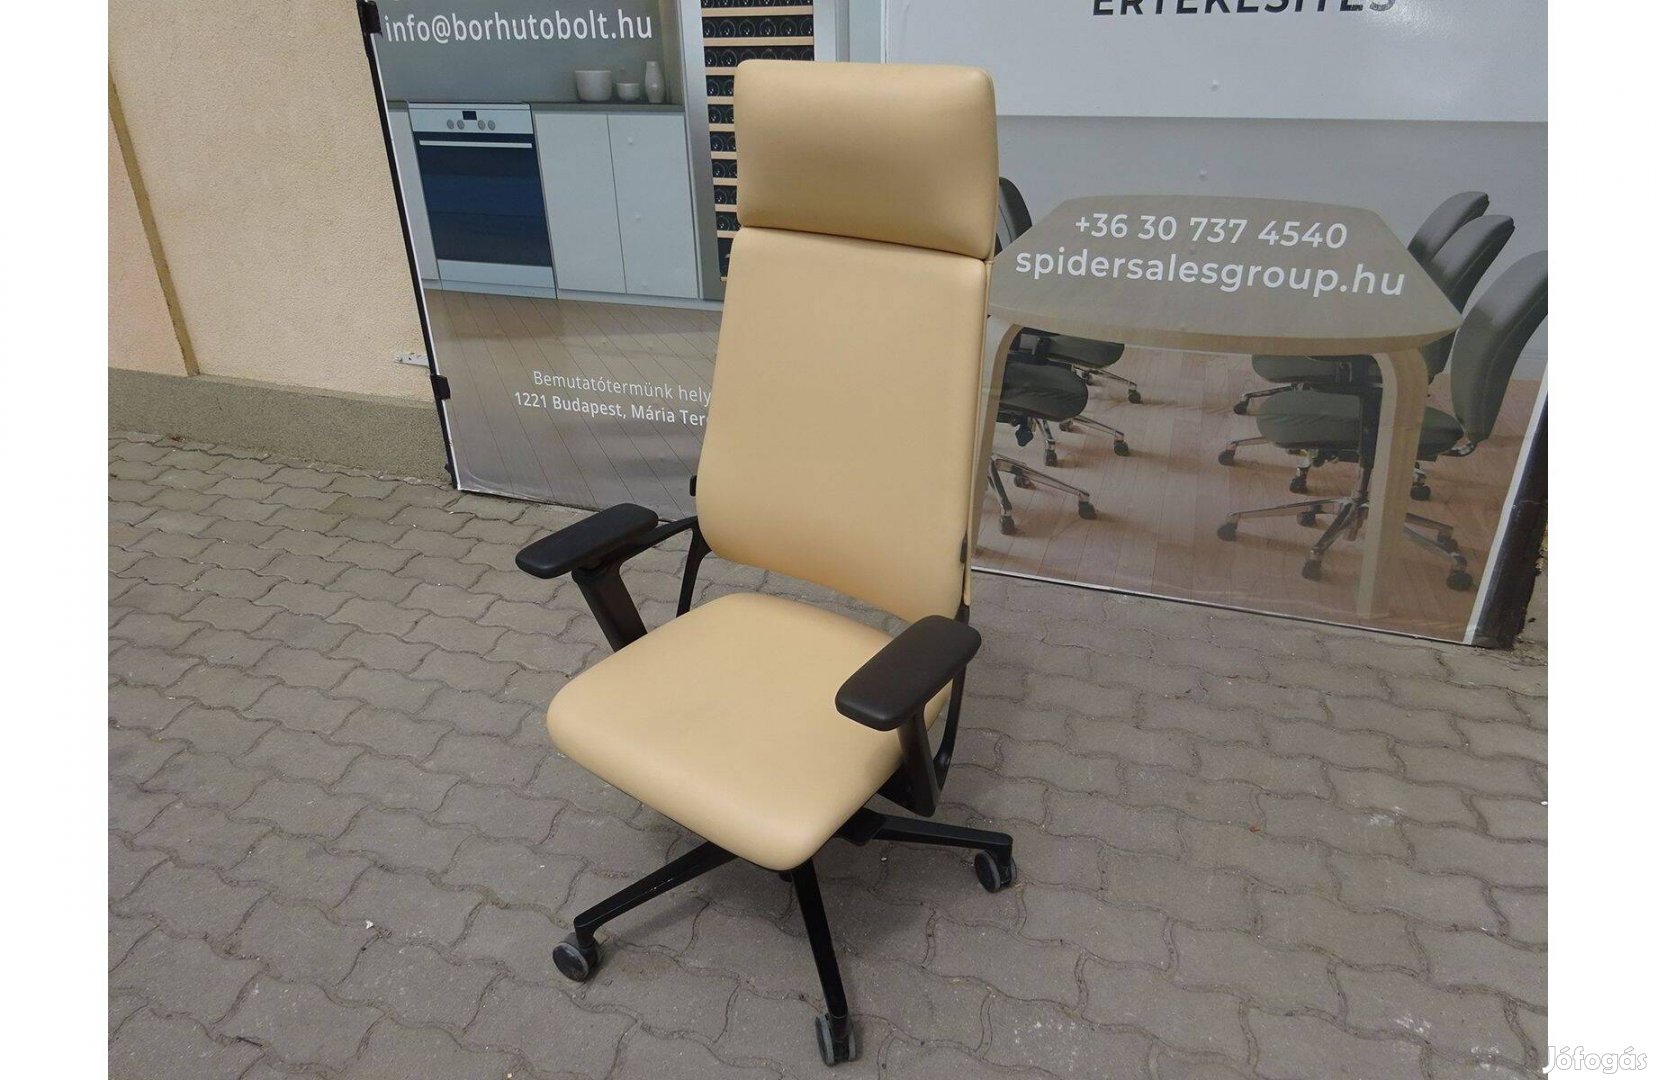 Főnöki bőrszék, Klöber Connex2 irodai forgószék, gurulós szék használt